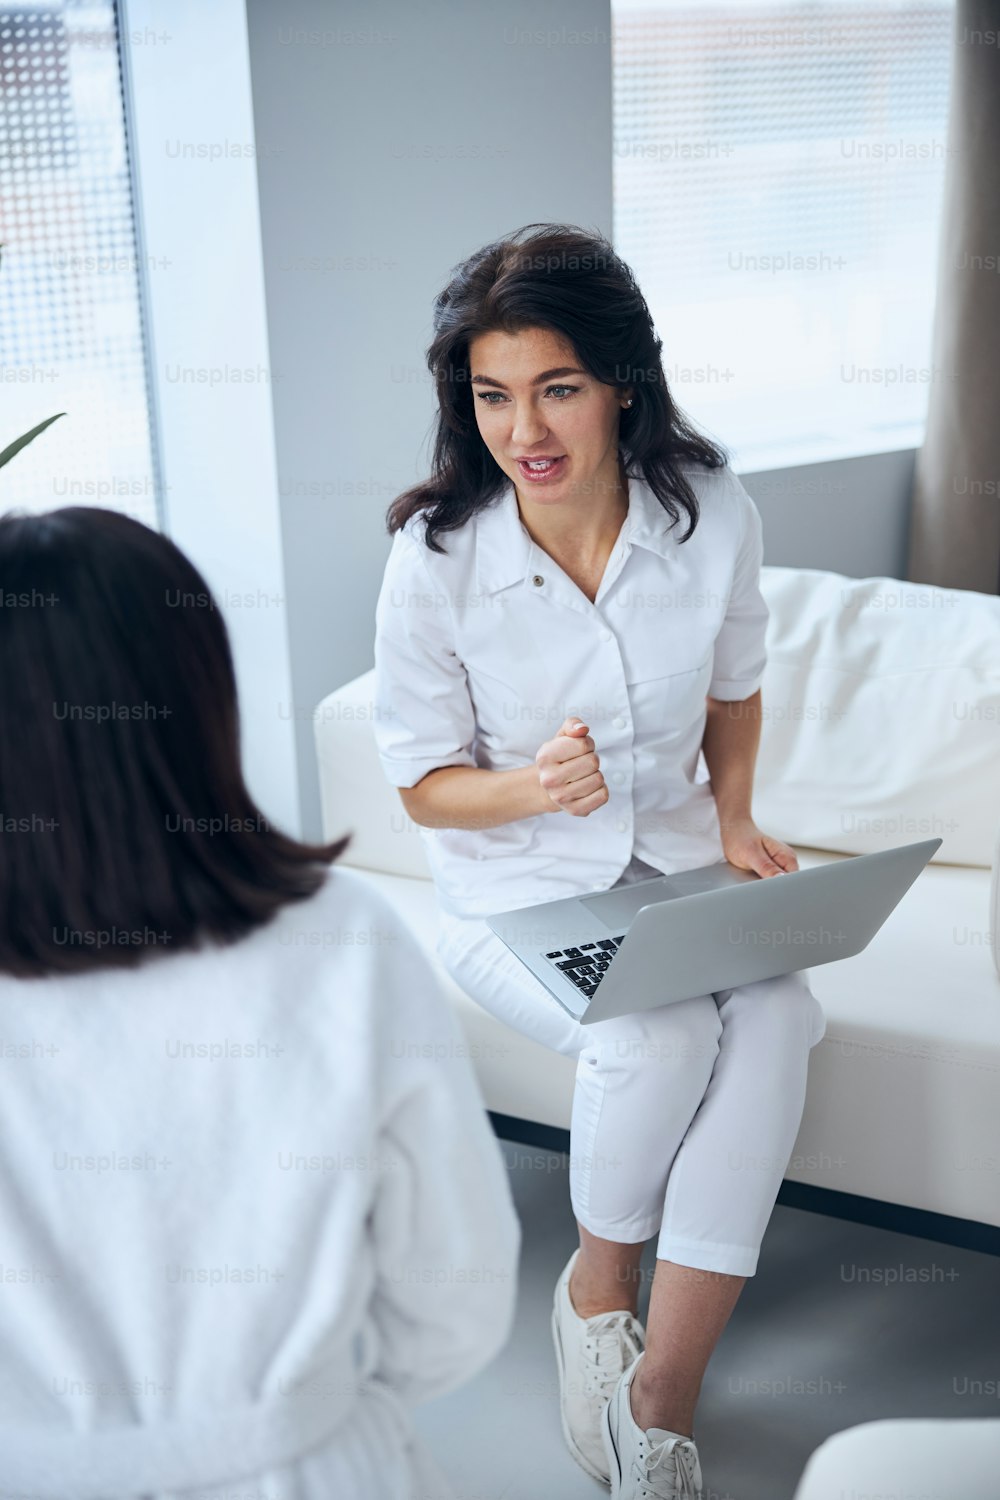 Fokussierte Gesundheitsarbeiterin mit einem Laptop auf den Knien interviewt eine Frau während der Konsultation